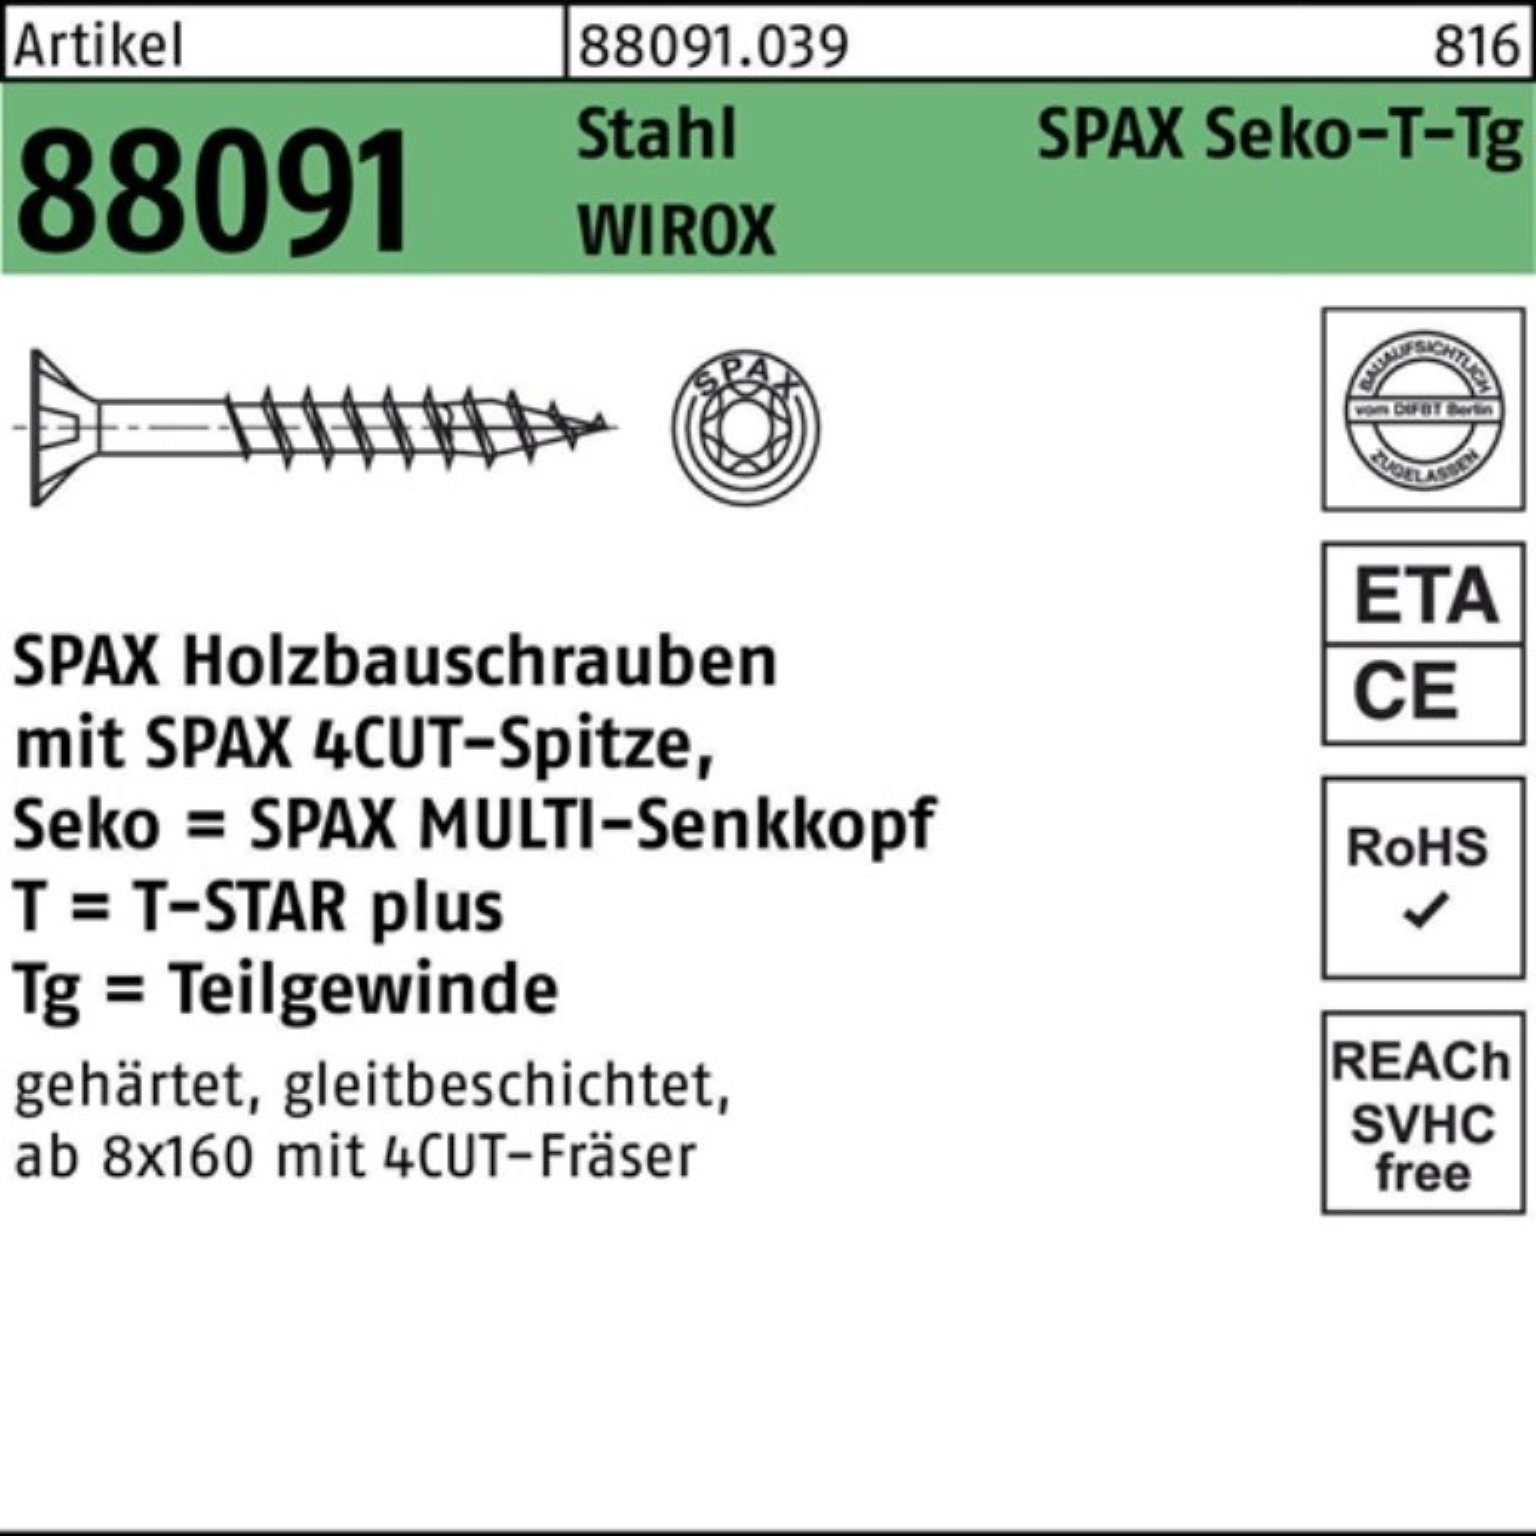 SPAX Schraube 100er Pack Schraube R 88091 SEKO/T-STAR TG 10x 280/80-T50 Stahl WIROX